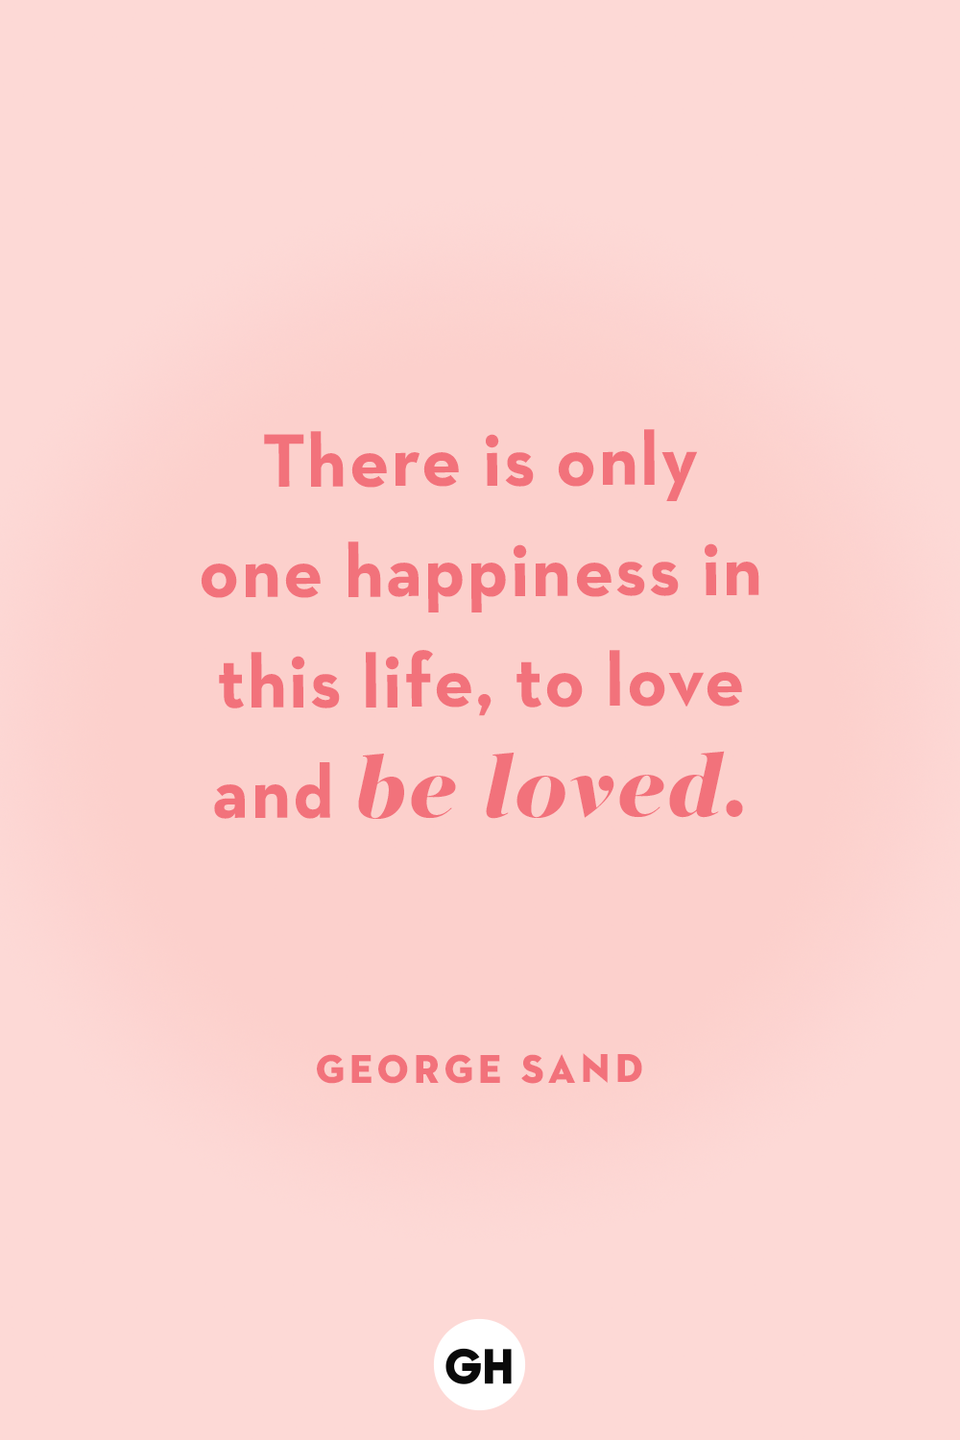 48) George Sand